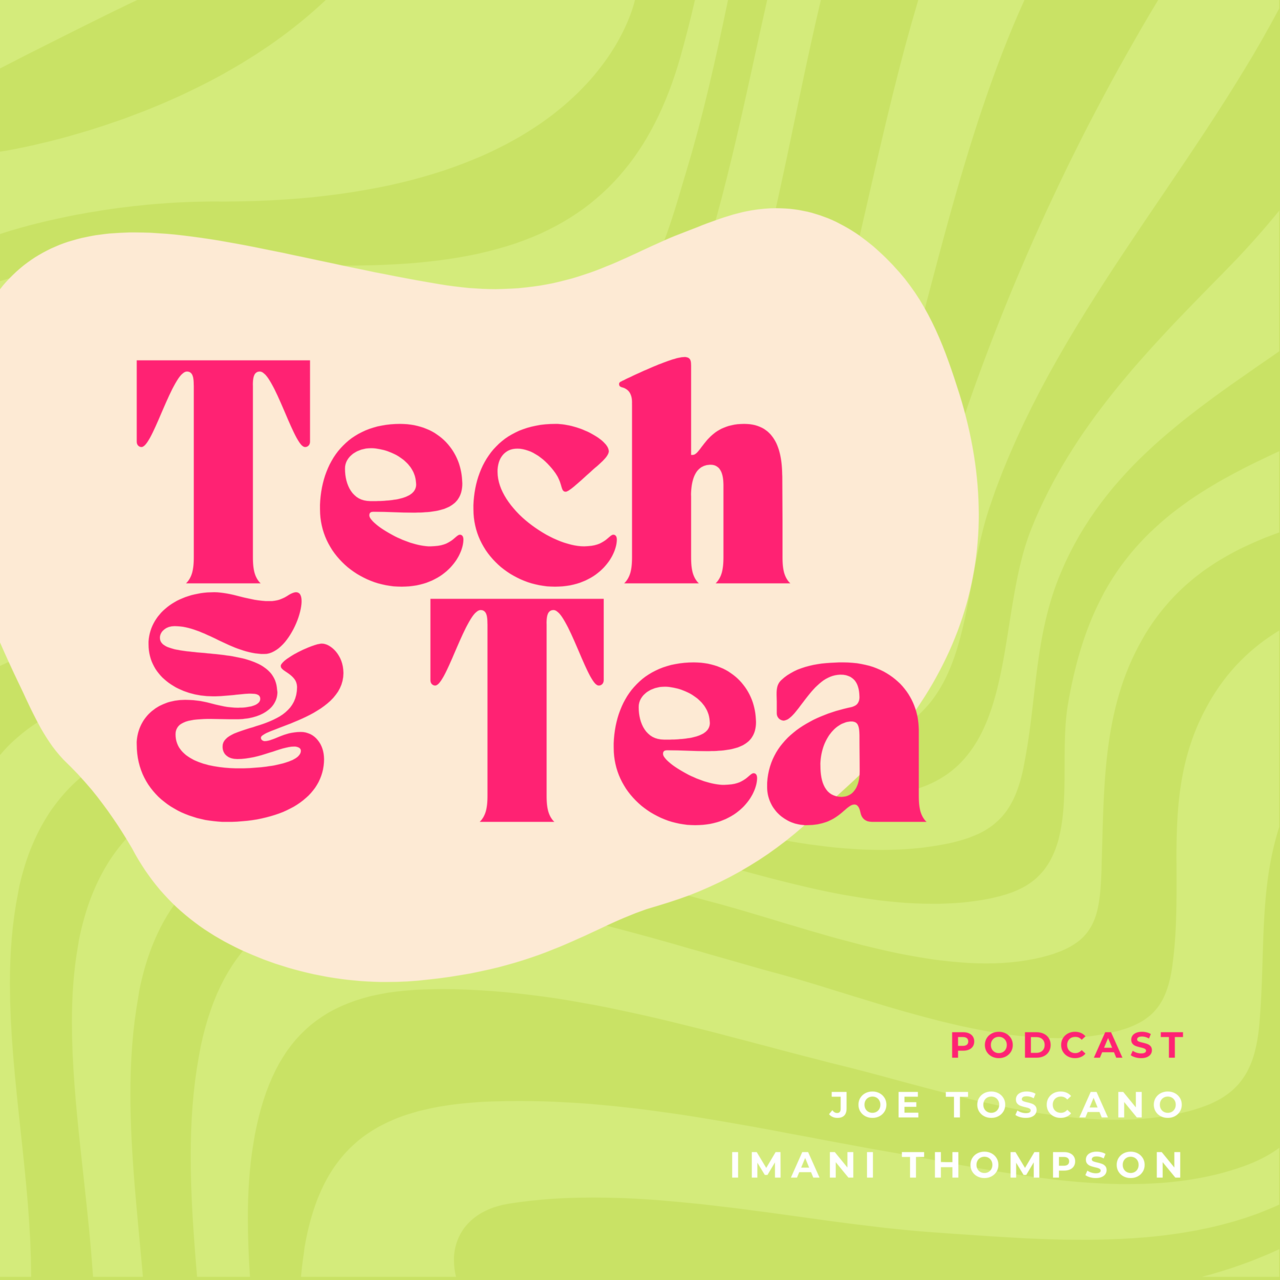 Tech & Tea